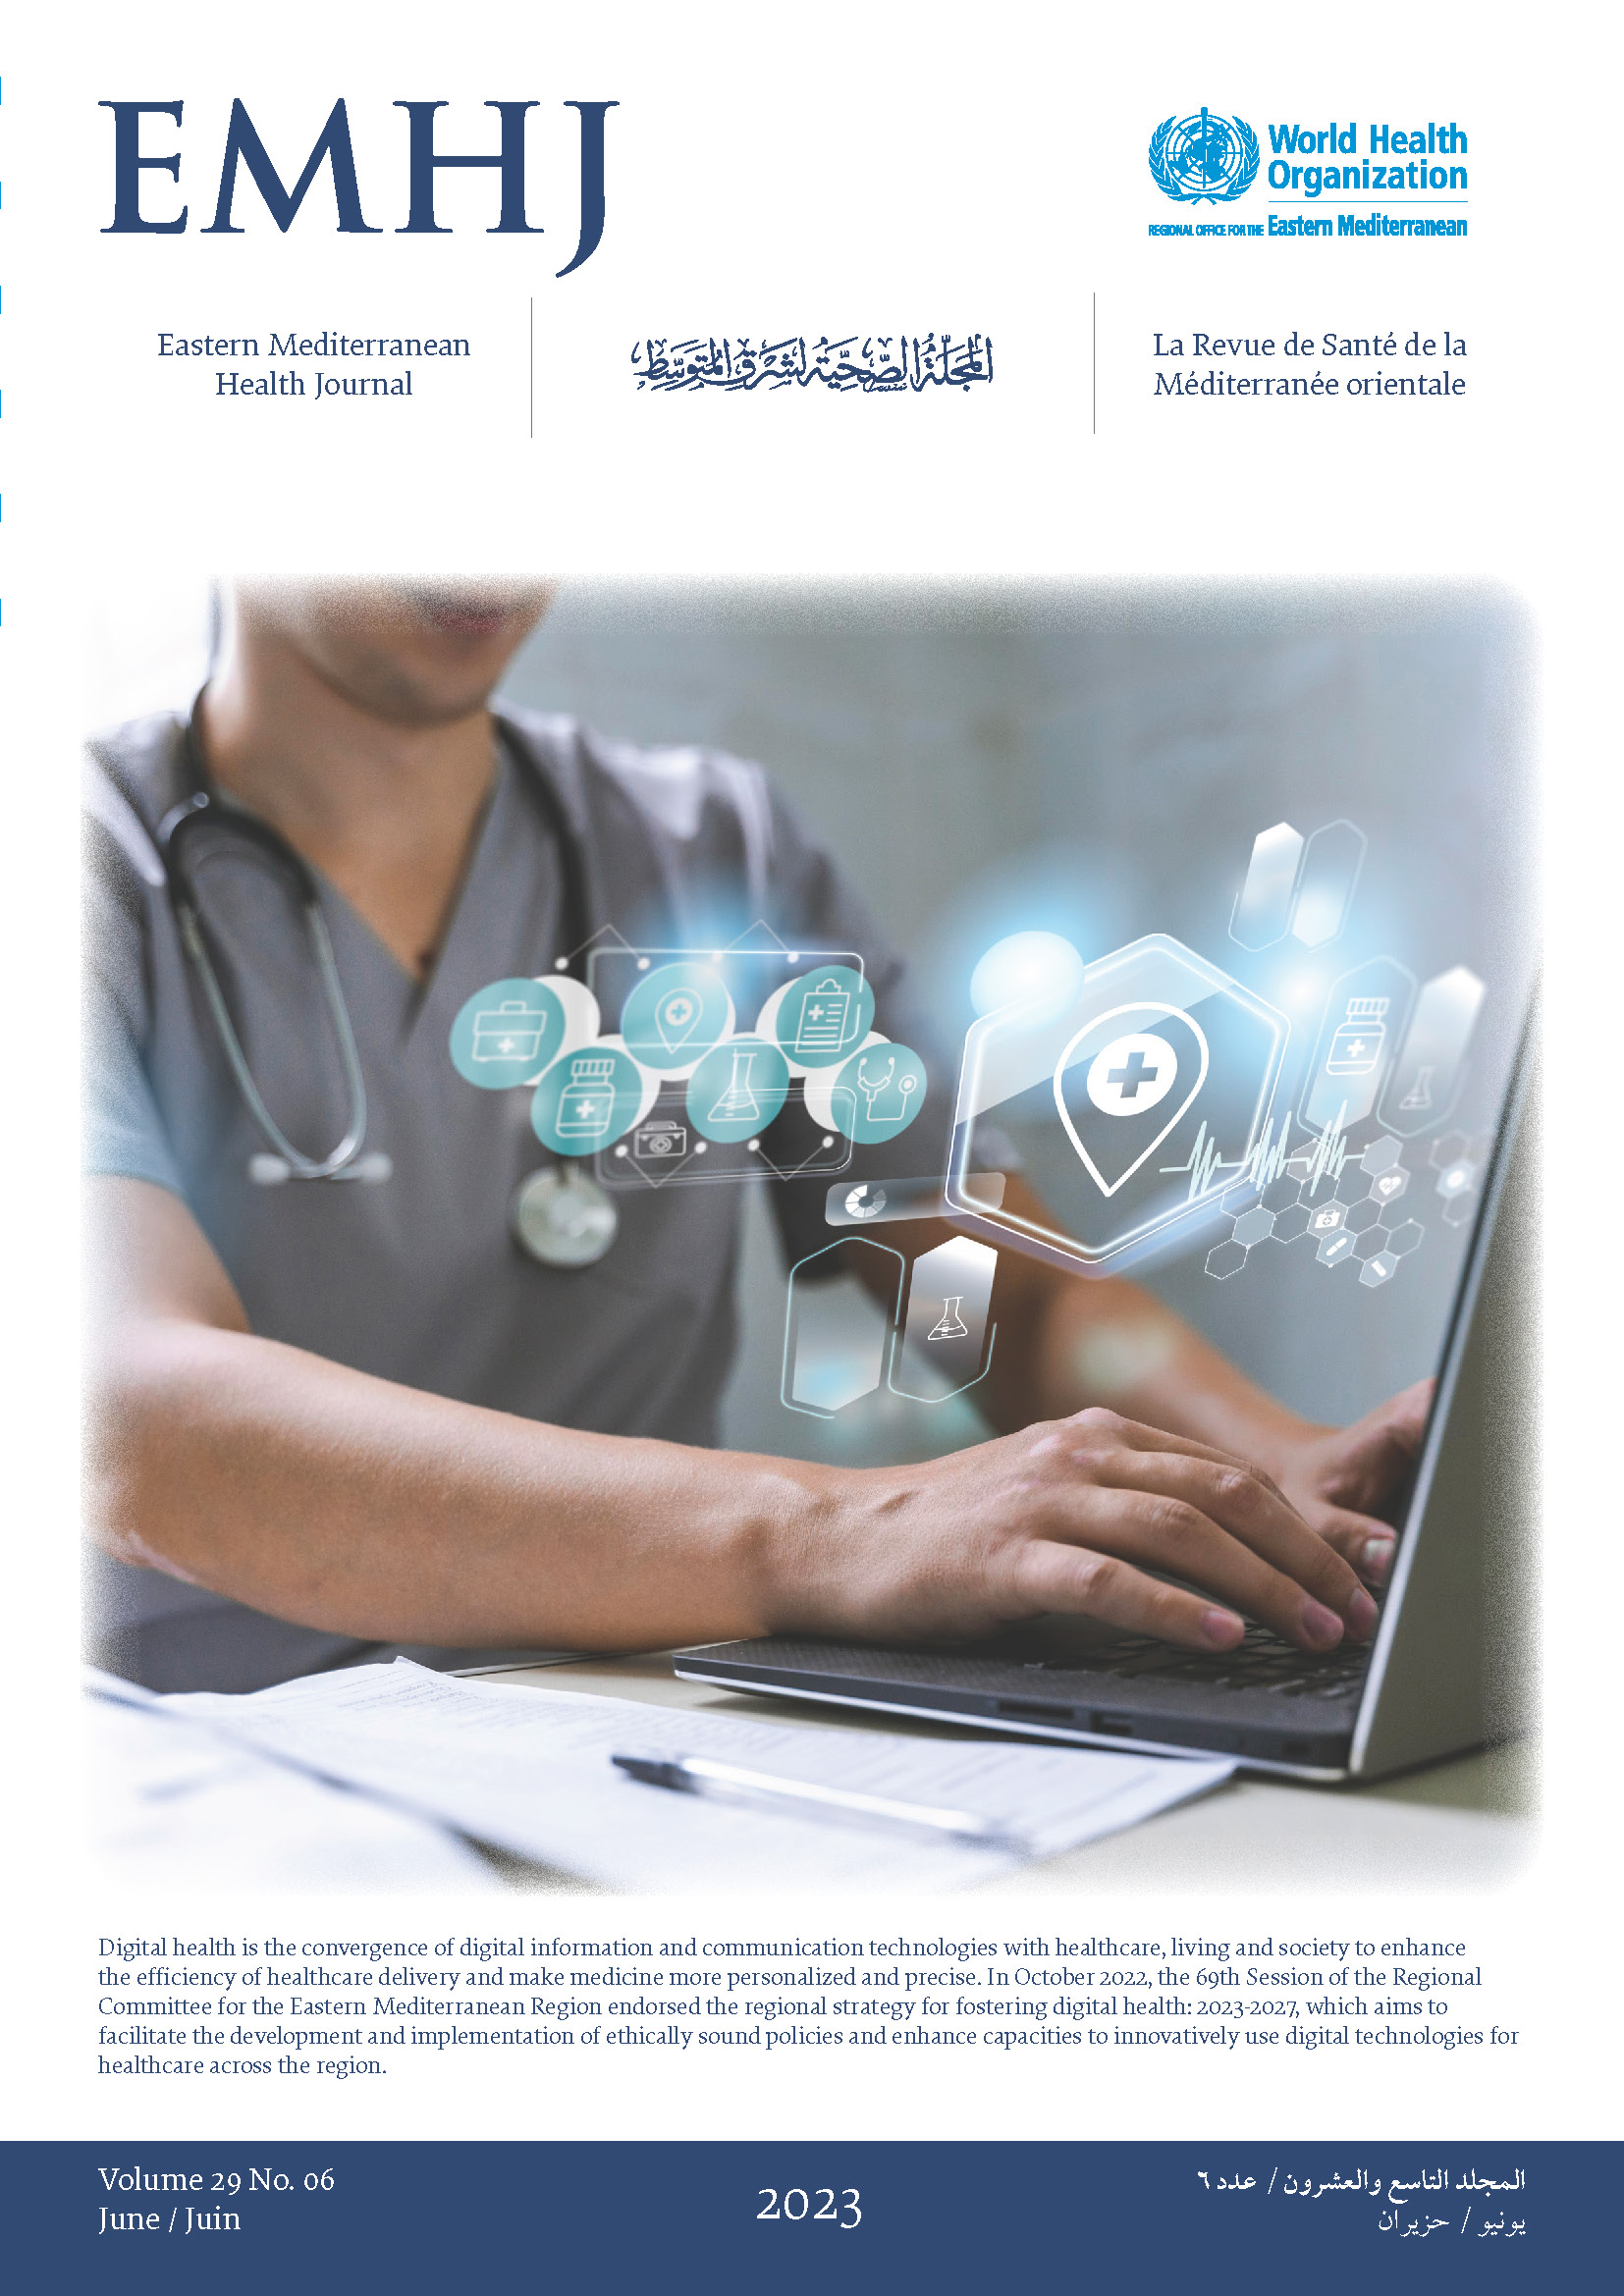 Eastern Mediterranean Health Journal [2023; Vol.29, Issue 6]